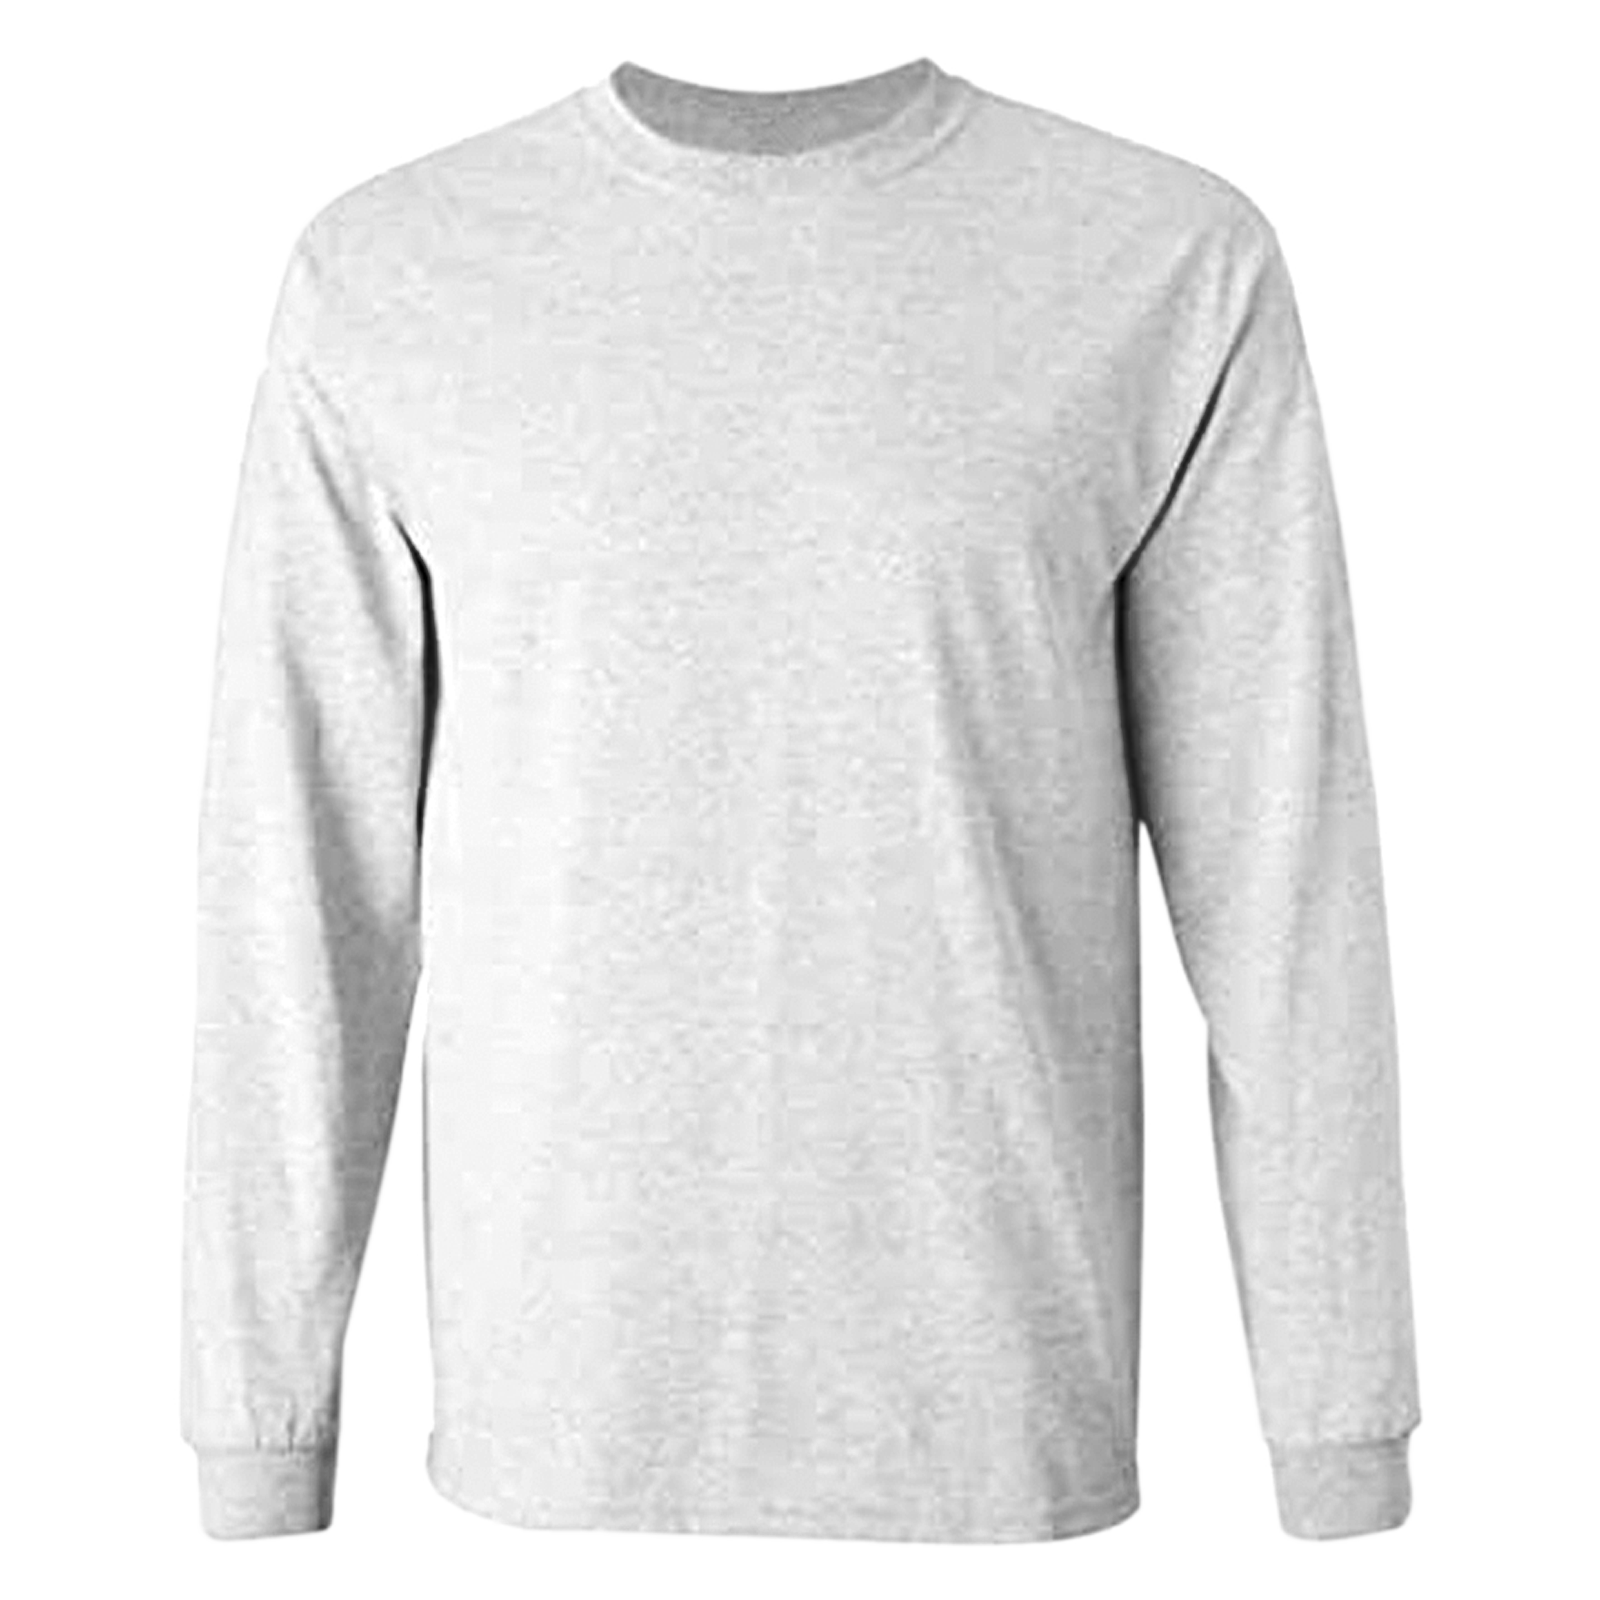 White Full Sleeves T-Shirt